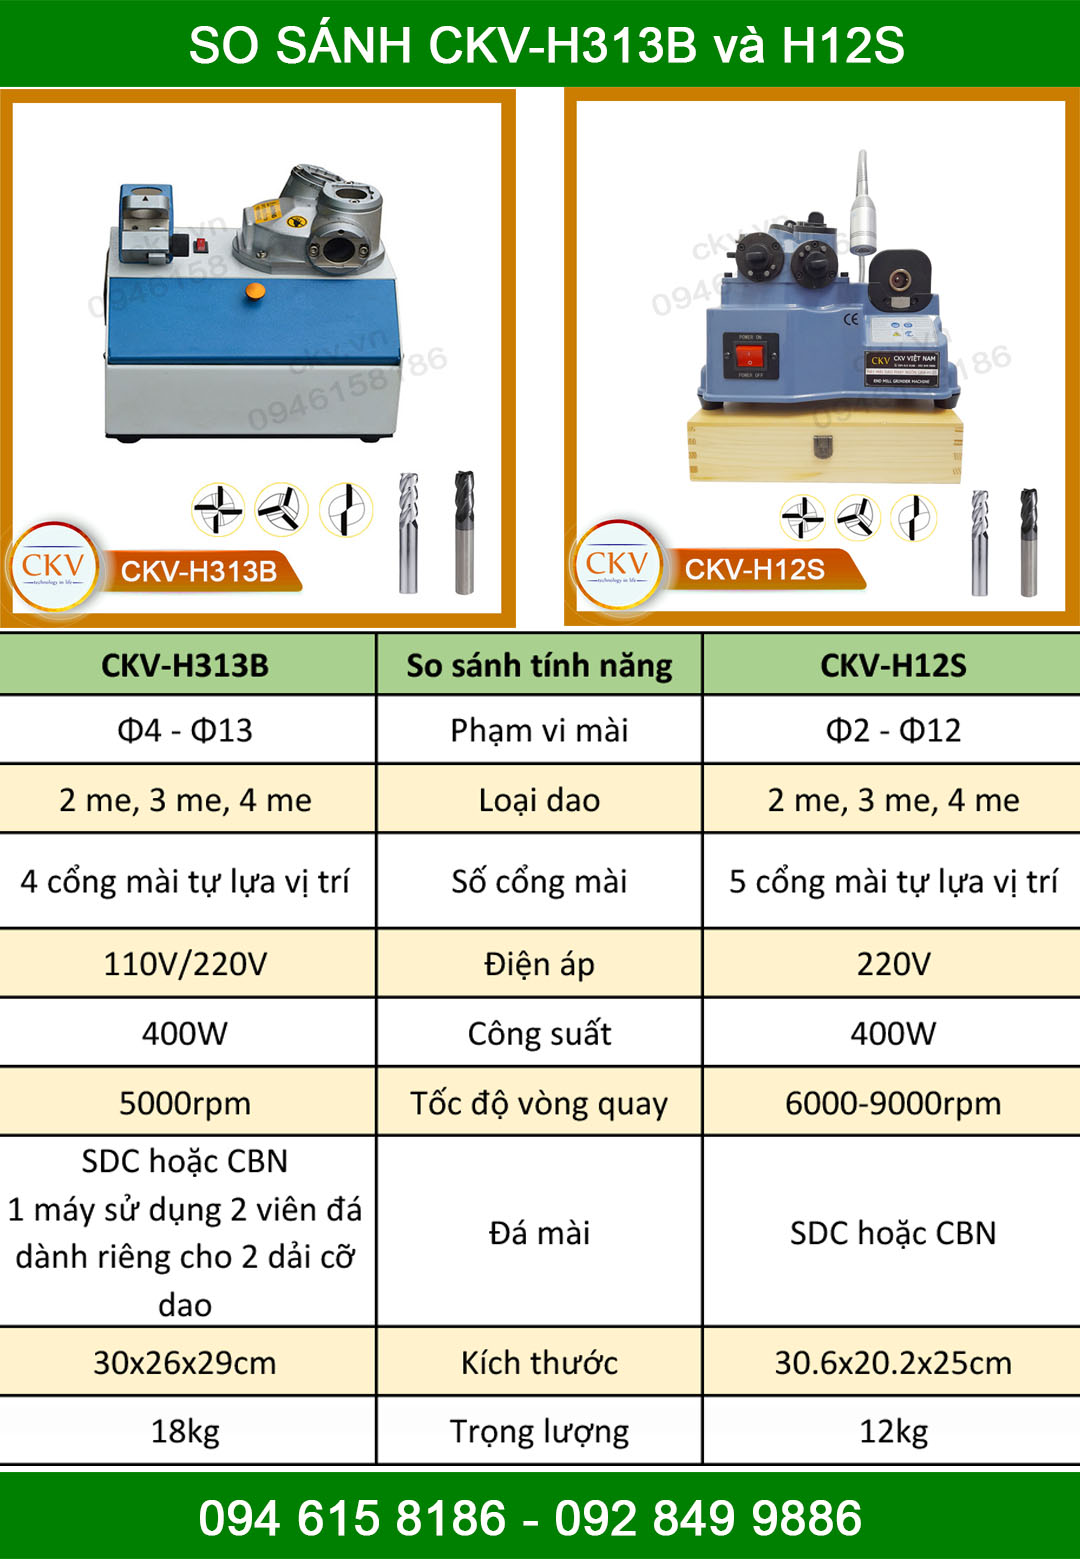 So sánh CKV-H313B và CKV-H12S